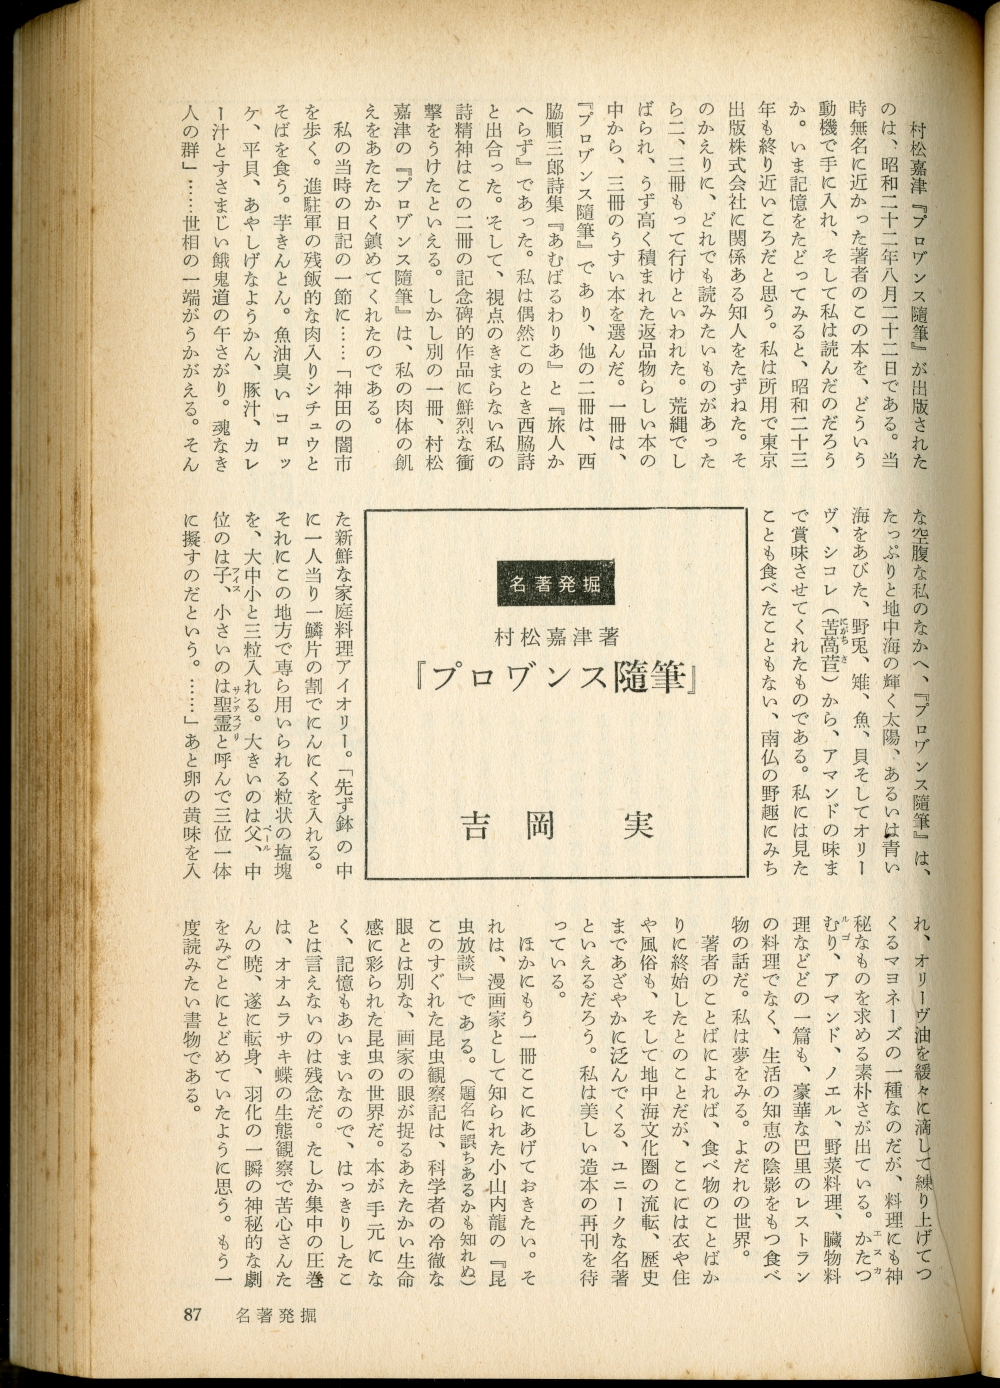 『文芸』1969年5月号（河出書房）1ページコラム「名著発掘」の吉岡実